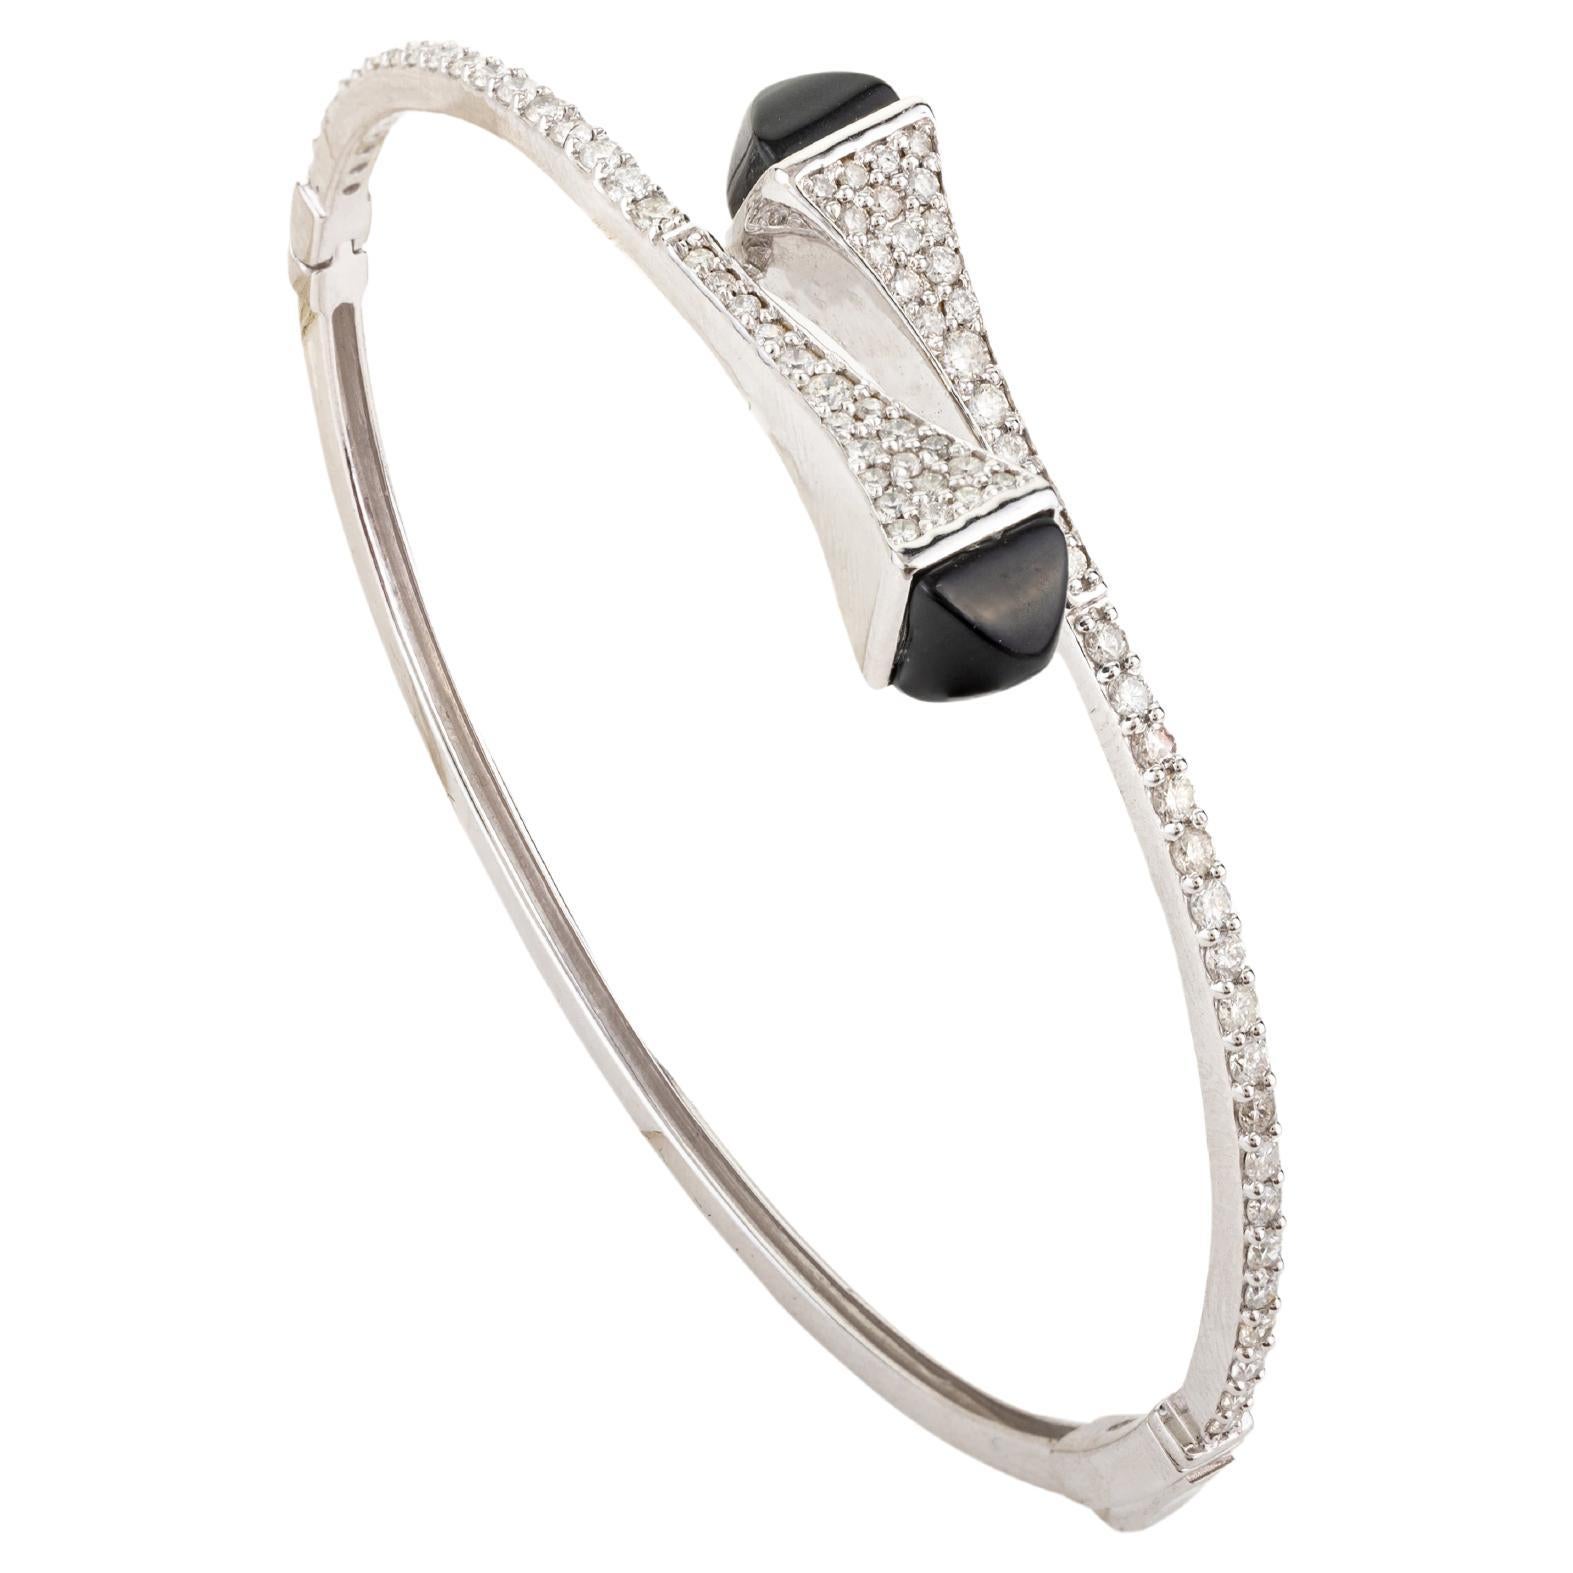 18k White Gold 1.19 CTW Certified Diamond Bangle Bracelet Gift for Her